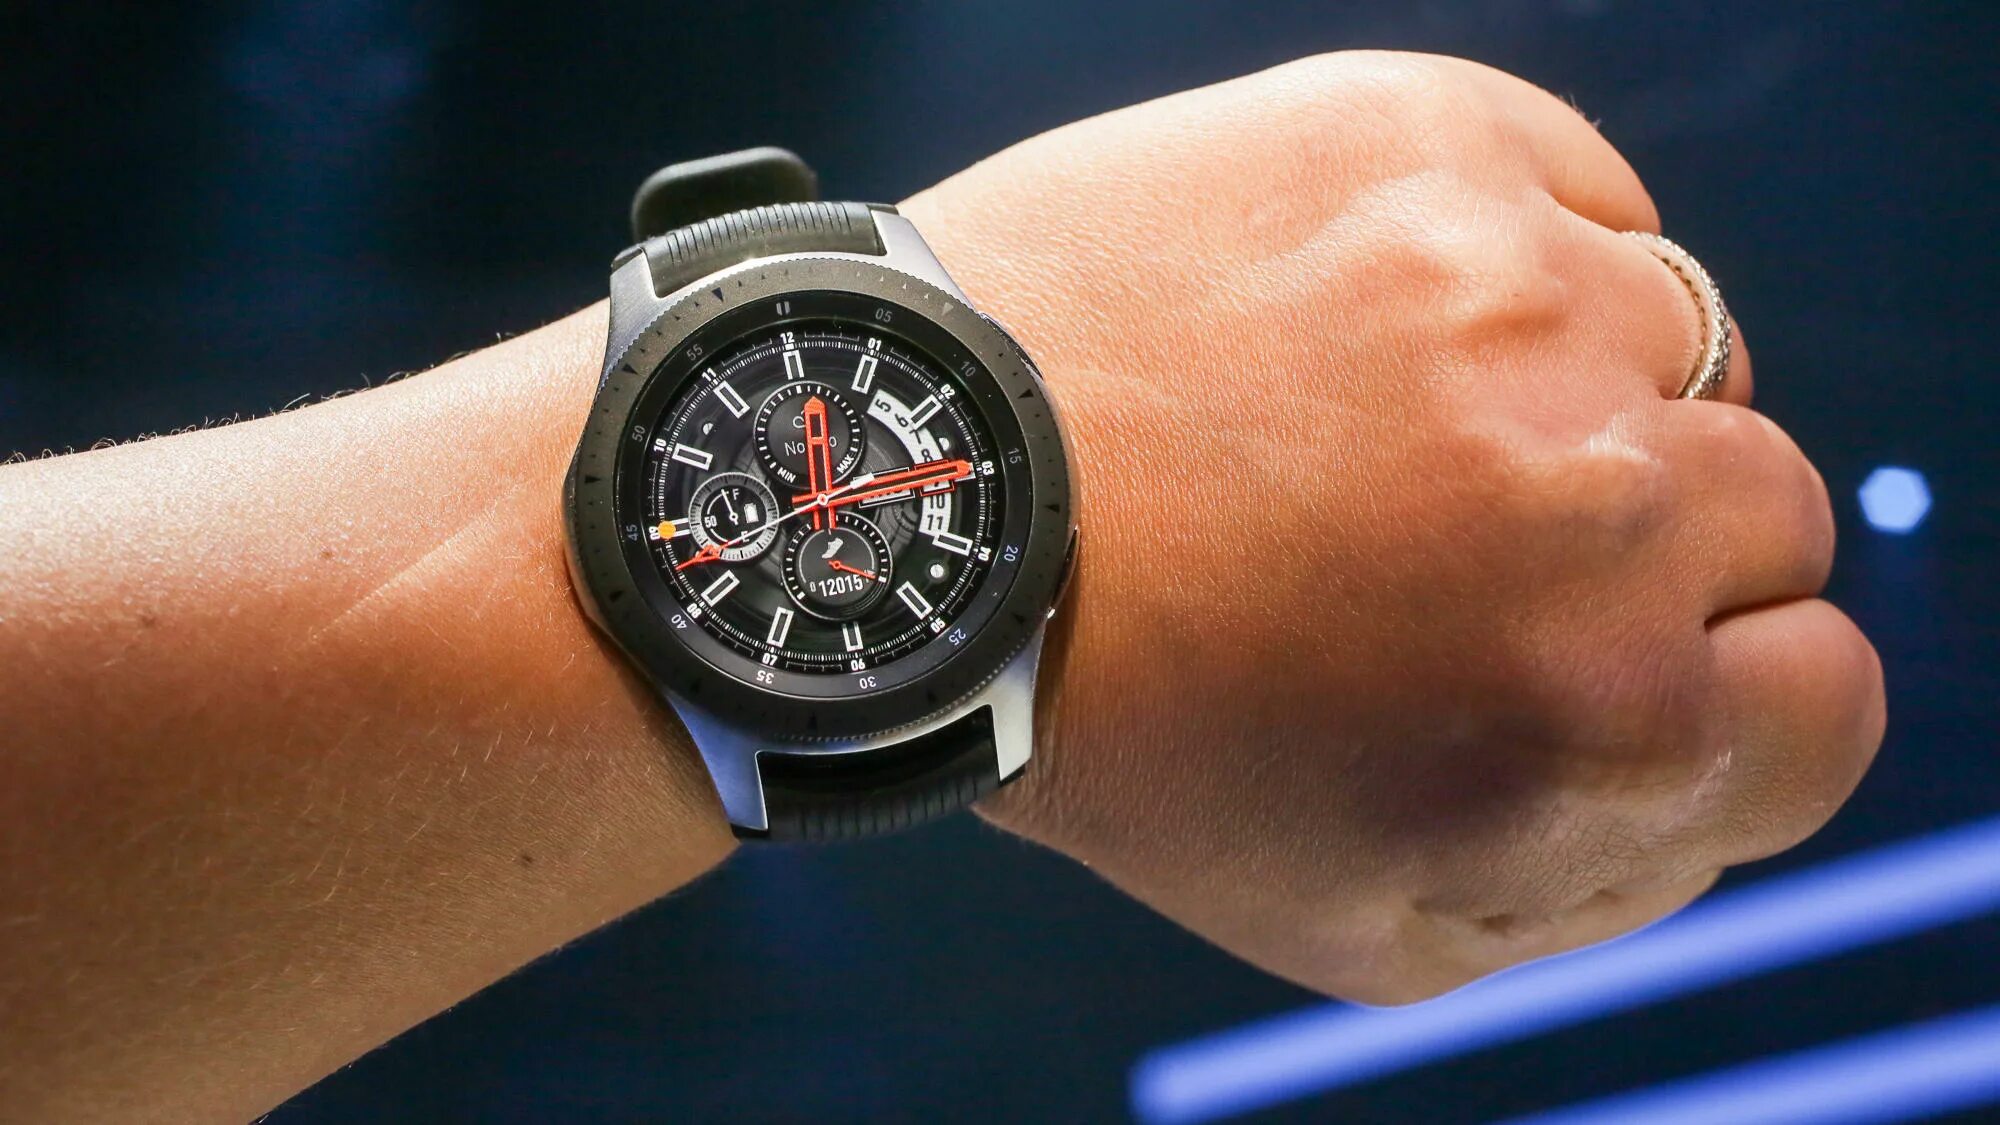 Galaxy watch 46mm. Samsung Galaxy watch 46mm. Samsung Galaxy watch 2018. Samsung Galaxy watch 4. Galaxy watch 46mm（2018）.